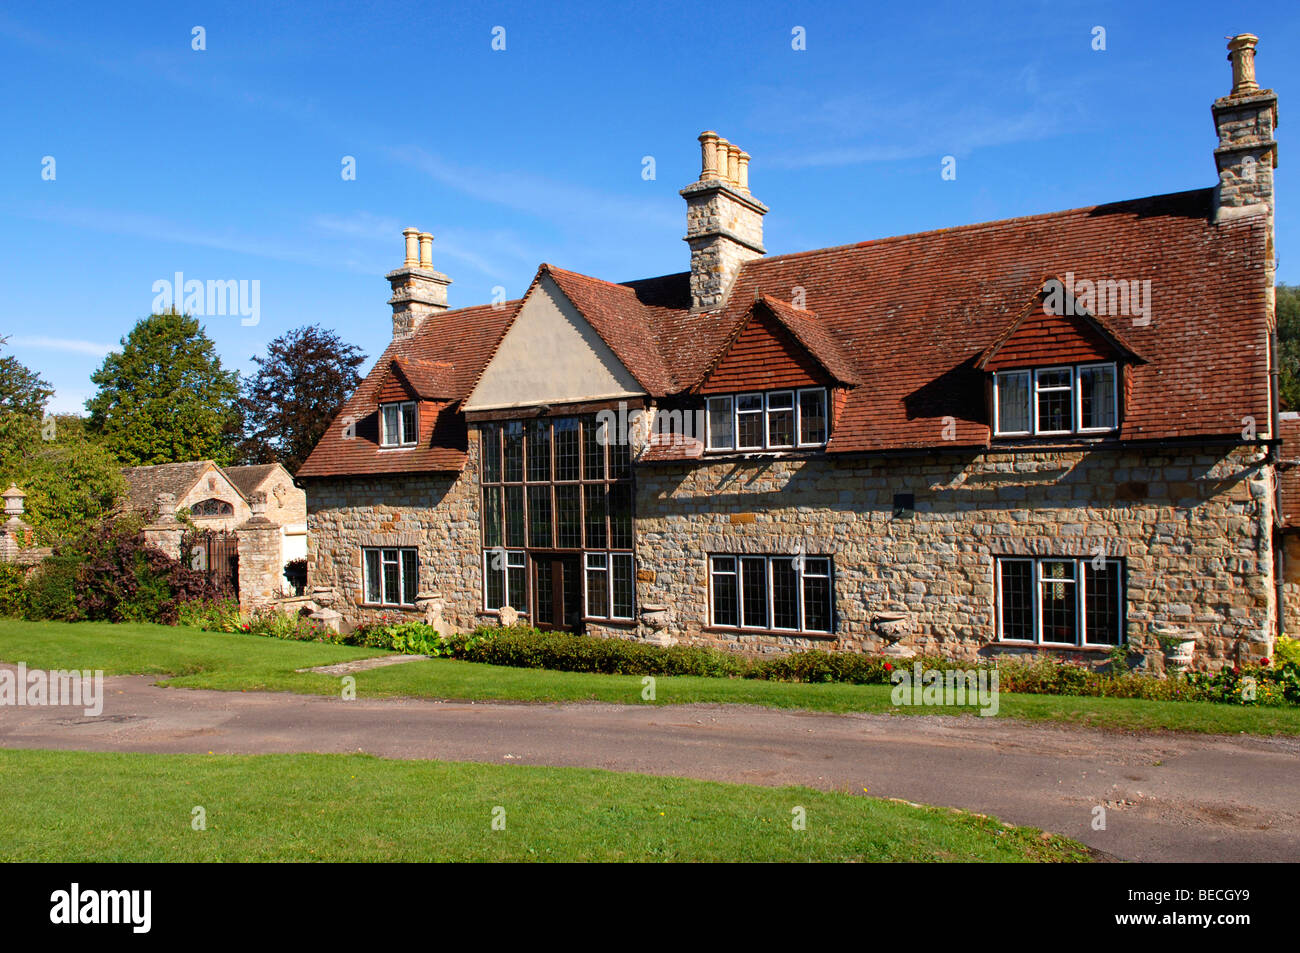 Old thatched English manor, Tredington, England, Europe Stock Photo